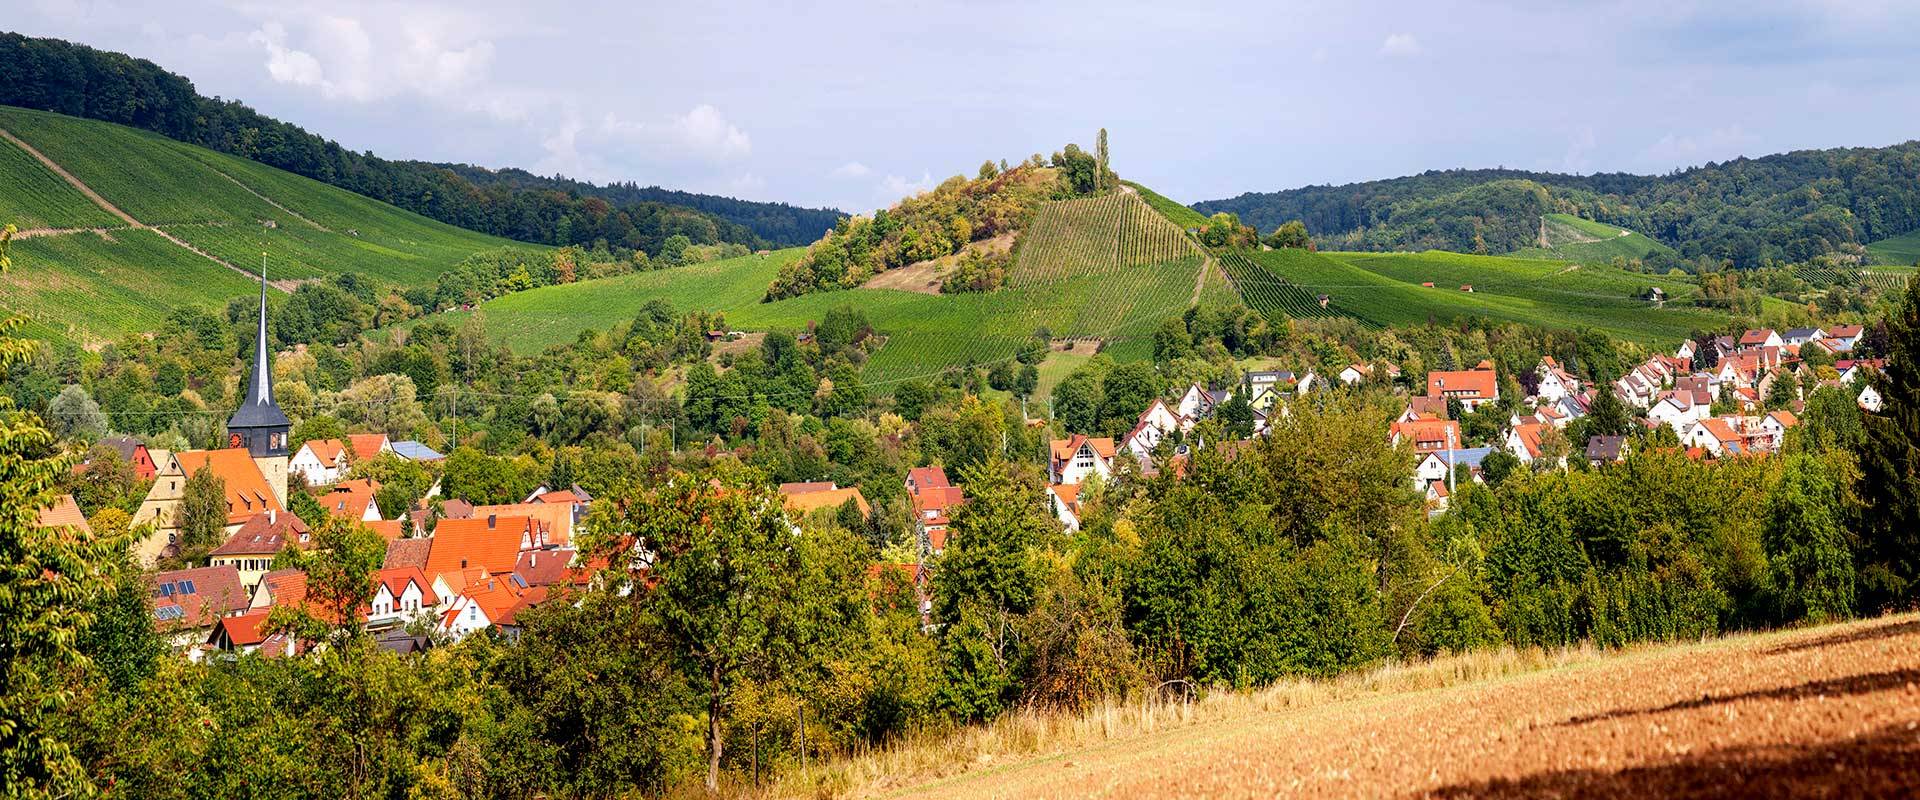 Suelzbach Panorama1 Rudolf Mester 2 1920x800 1